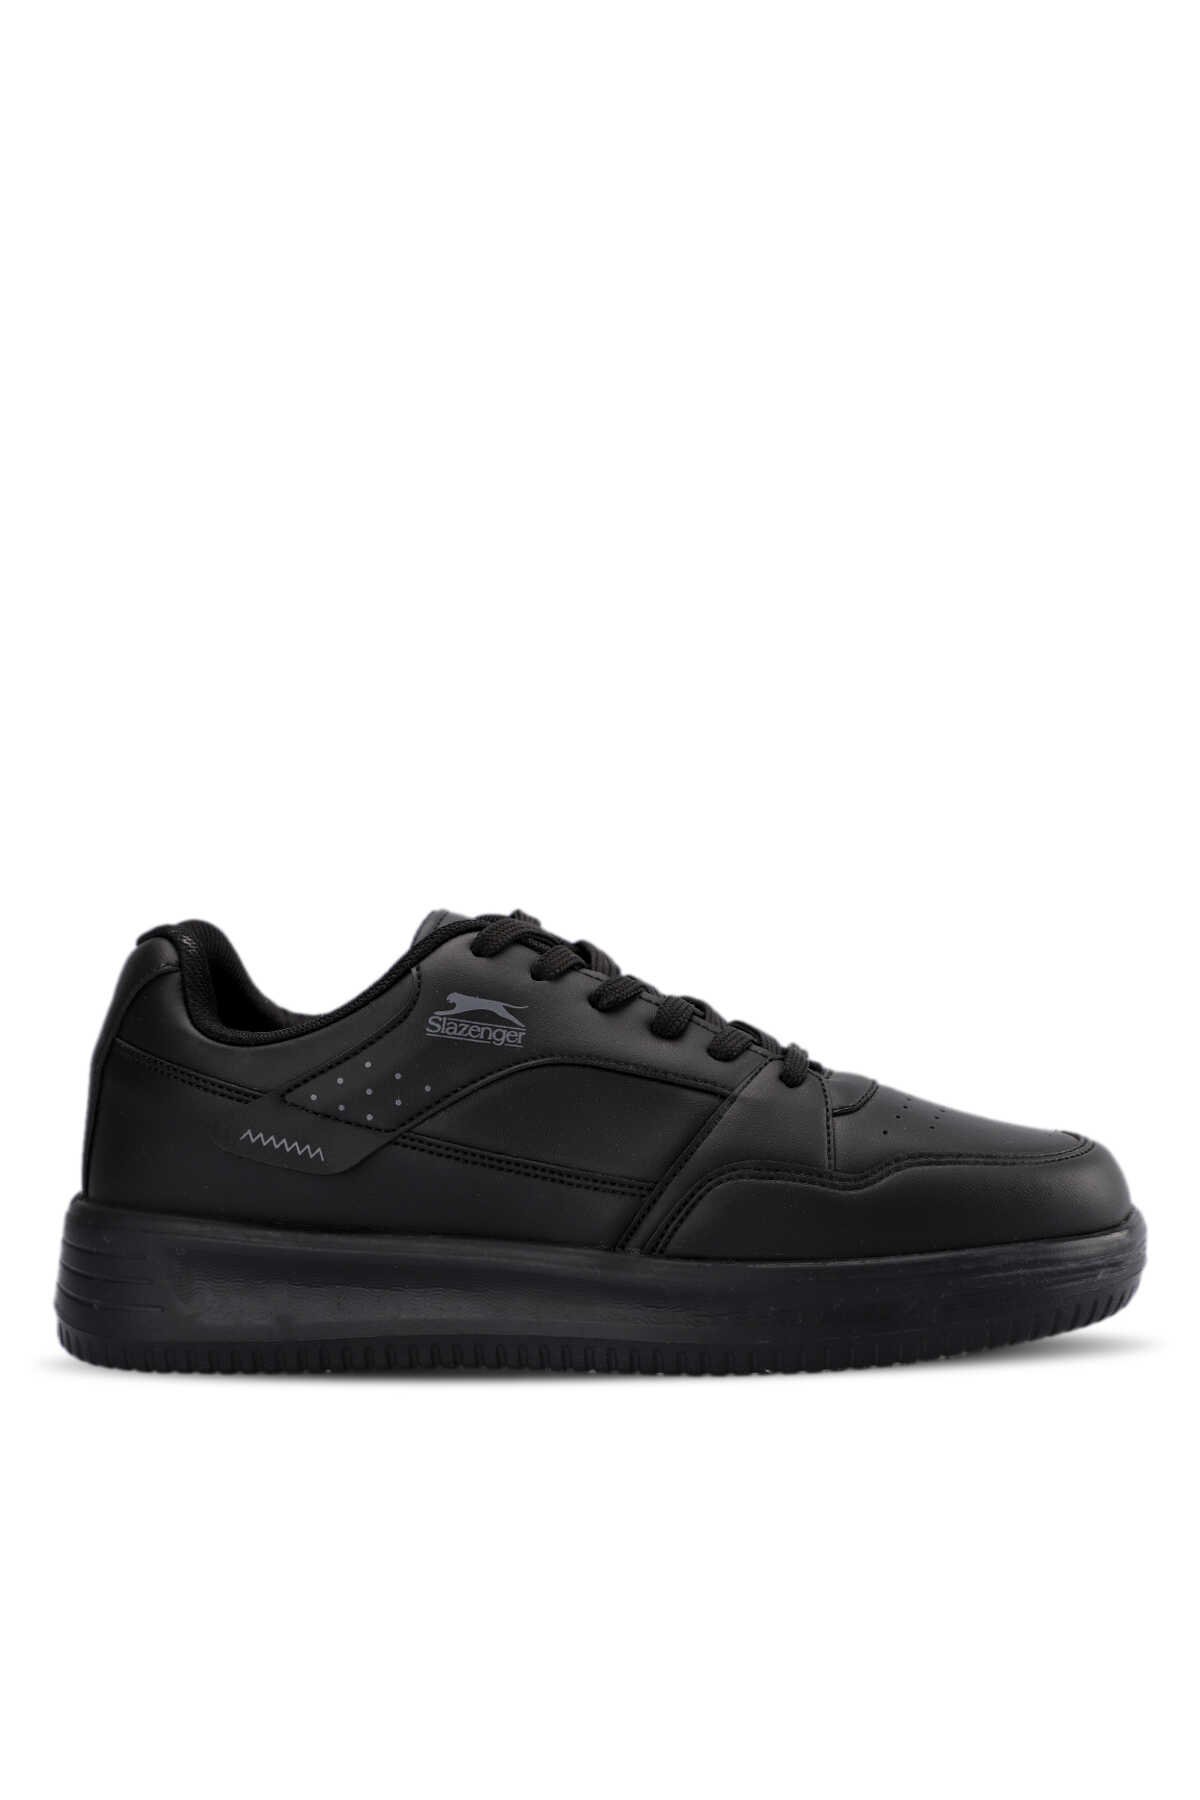 Slazenger - LEVSKI Sneaker Erkek Ayakkabı Siyah / Siyah